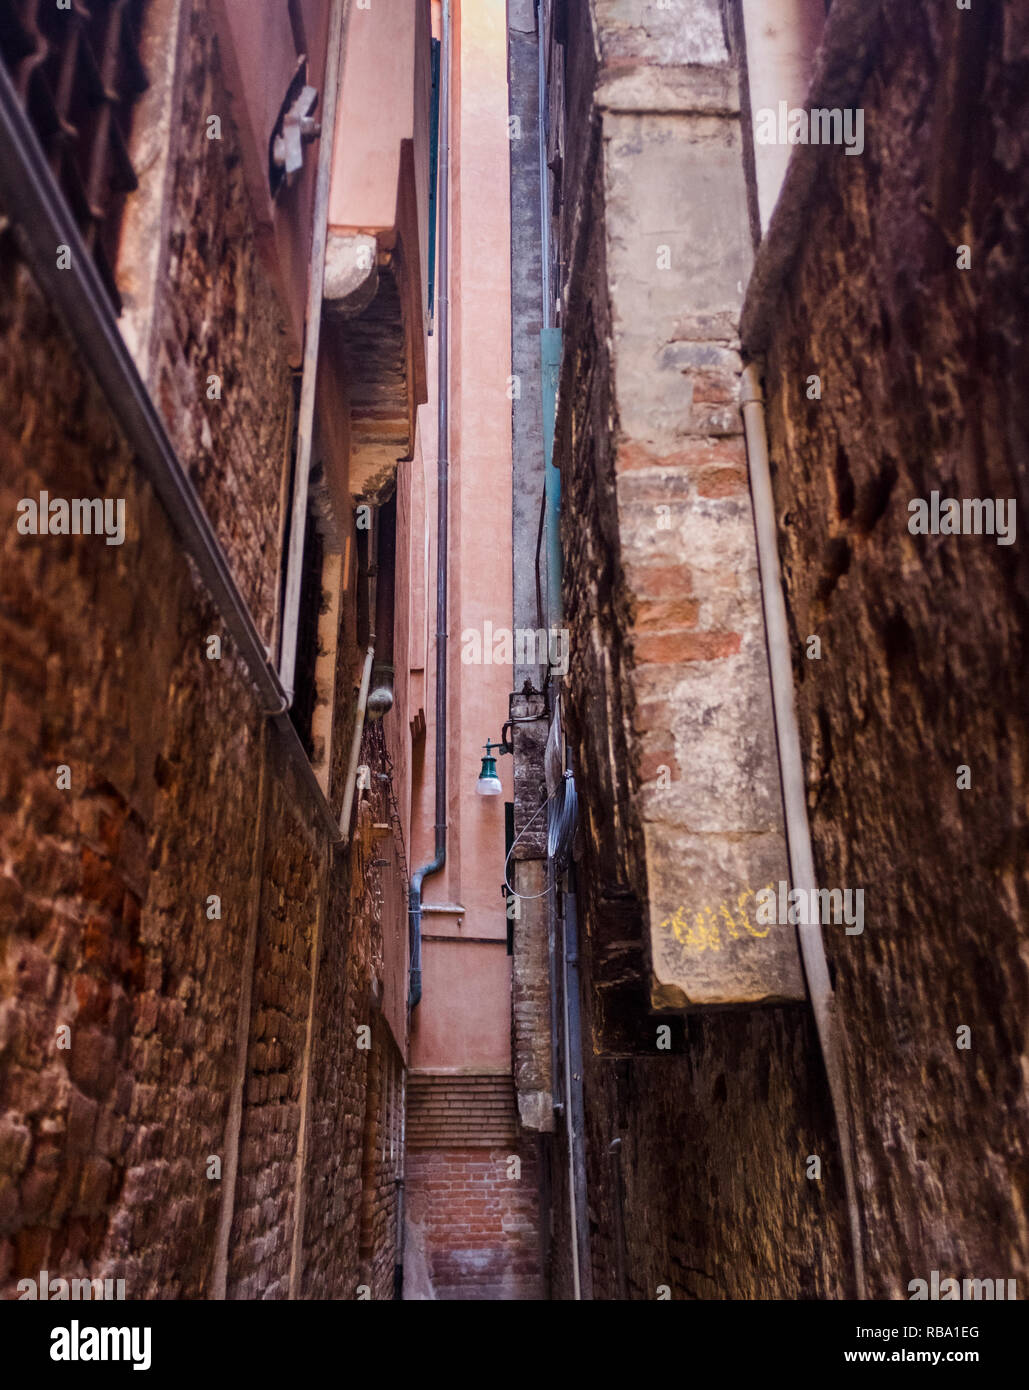 Le scene e i dettagli da strade e canali di Venezia, Italia Foto Stock